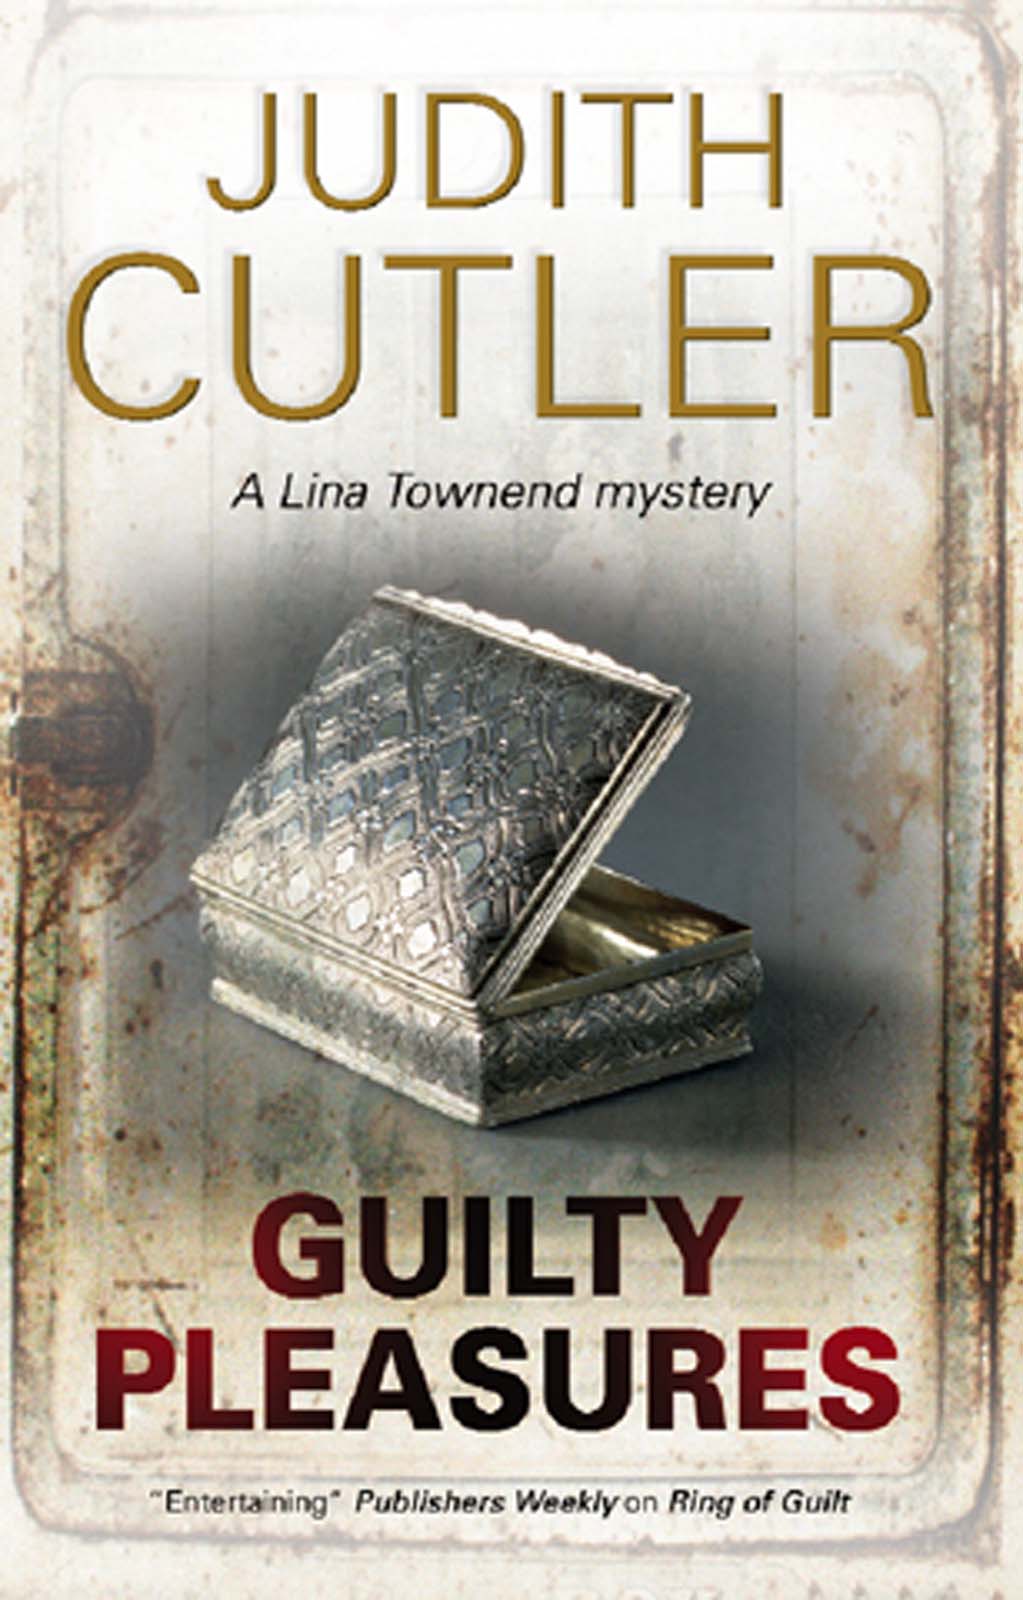 Guilty Pleasures (2011) by Judith Cutler